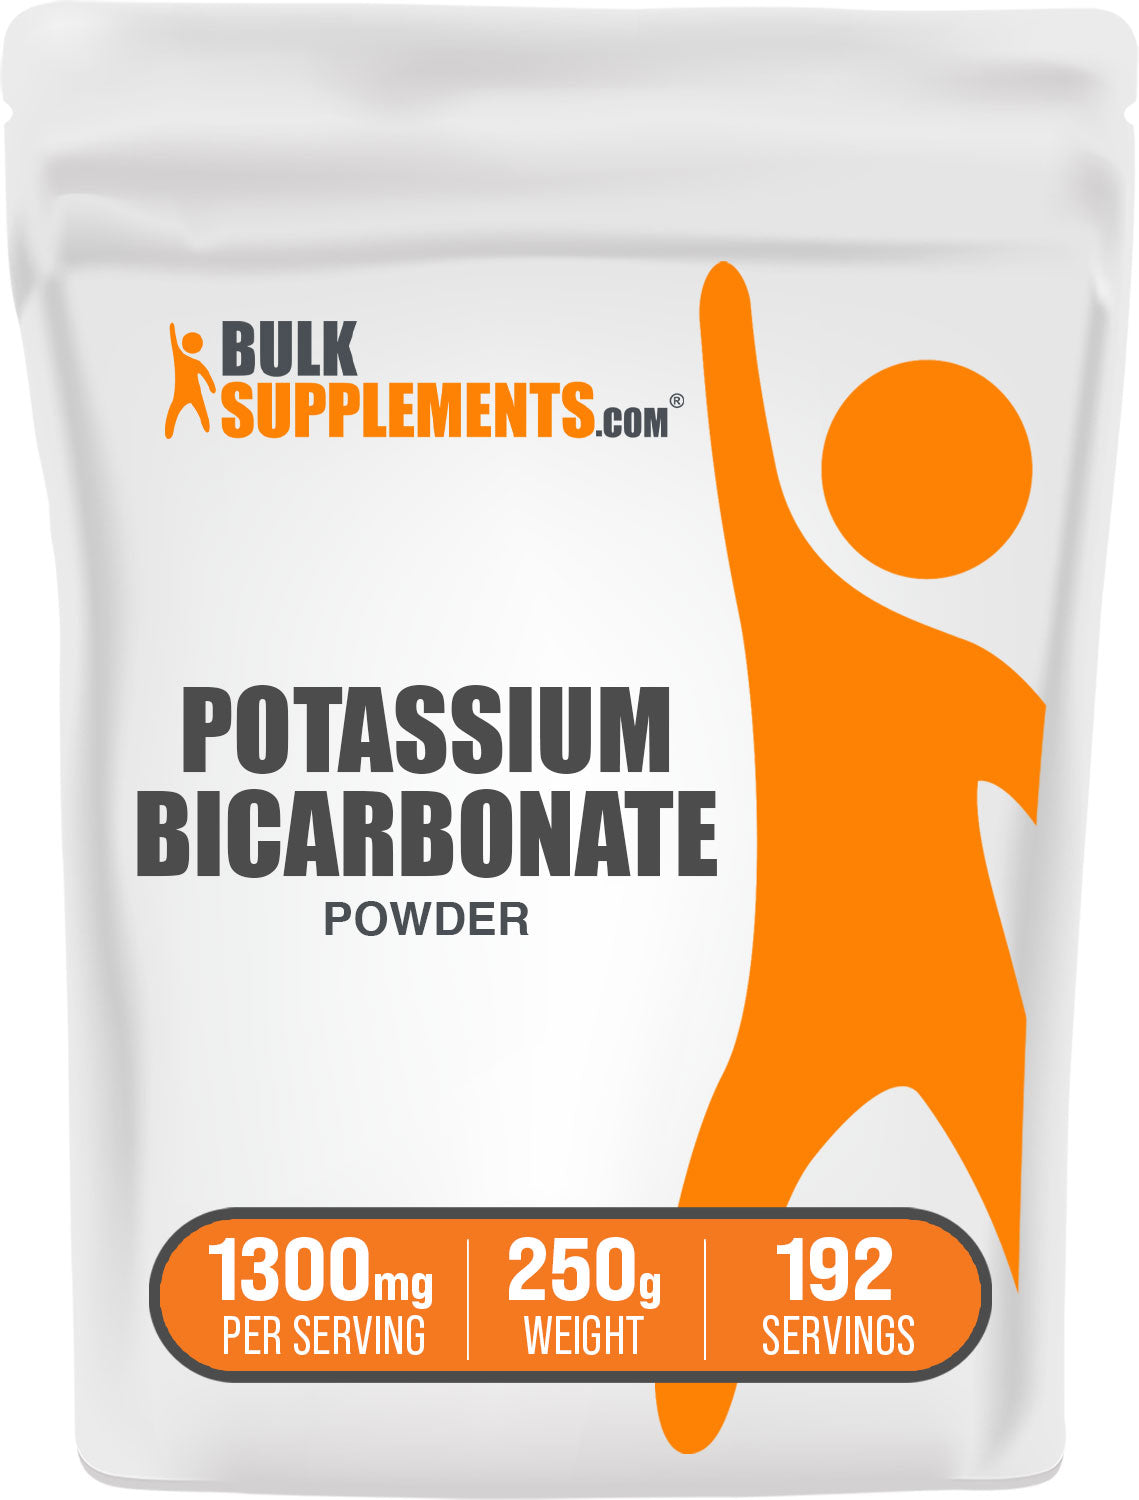 BulkSupplements.com Potassium Bicarbonate Powder 250g bag